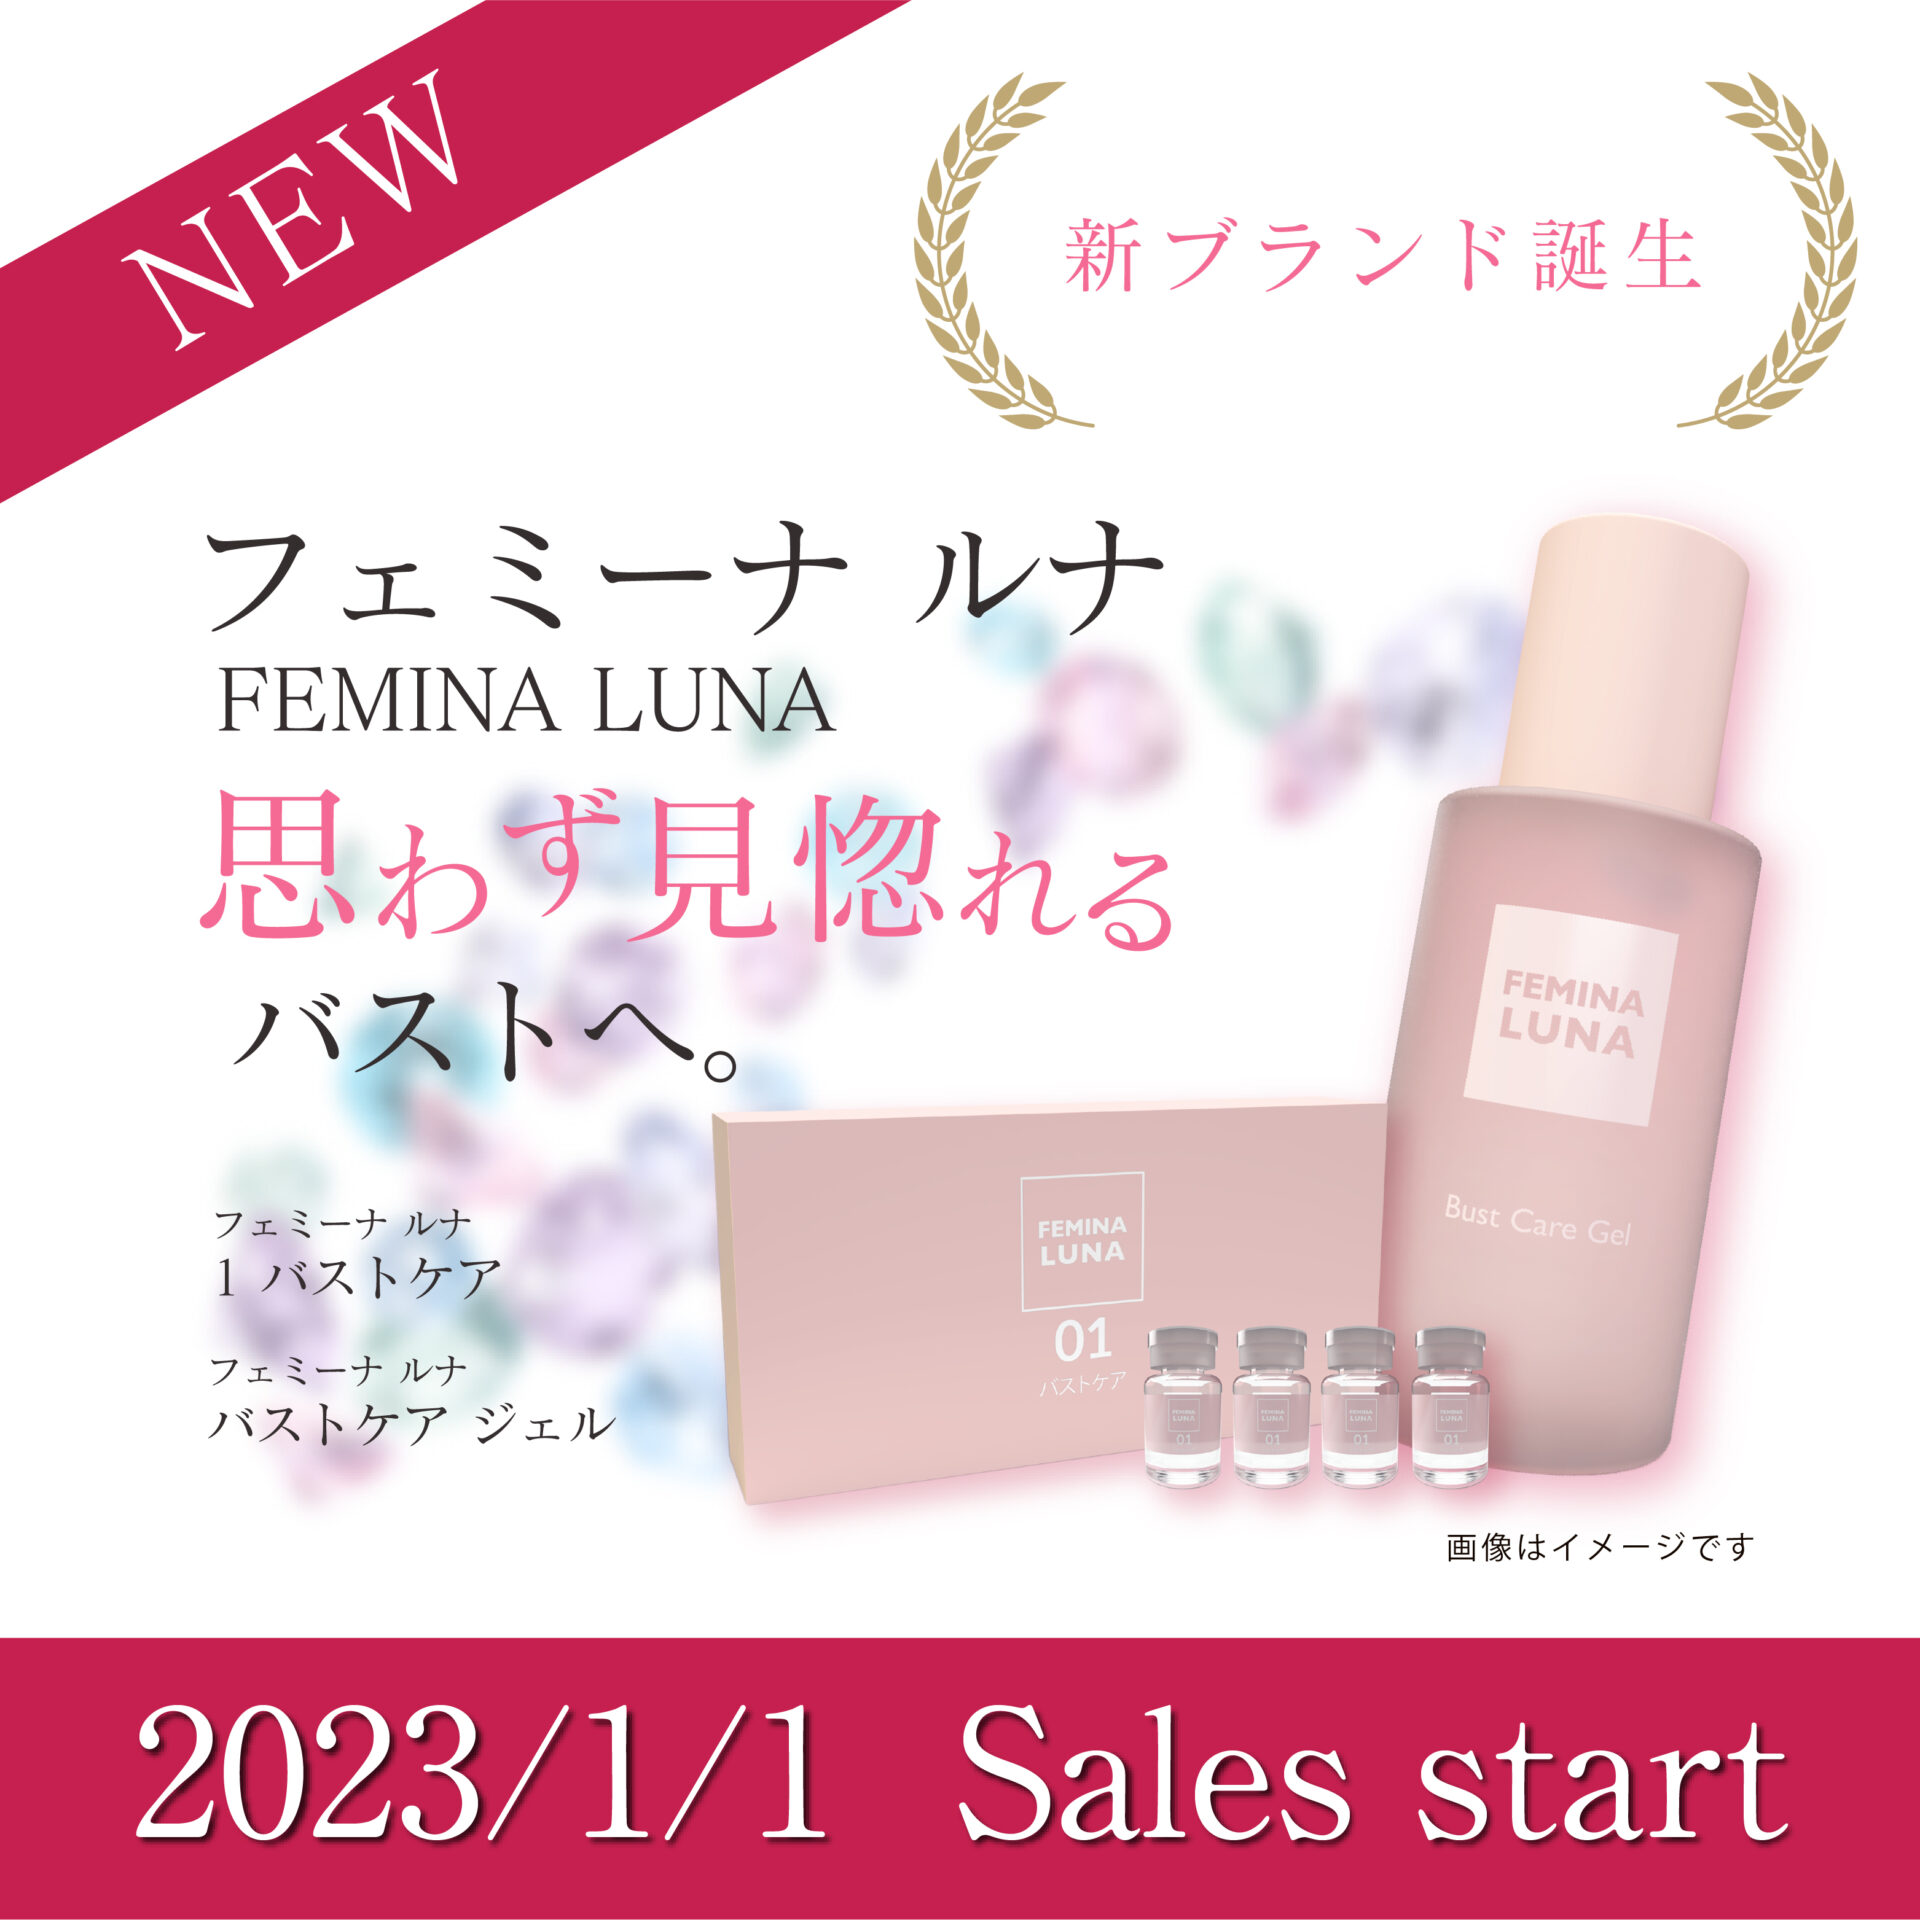 新ブランド誕生「FEMINA LUNA (フェミーナ ルナ)」新製品 発売開始 